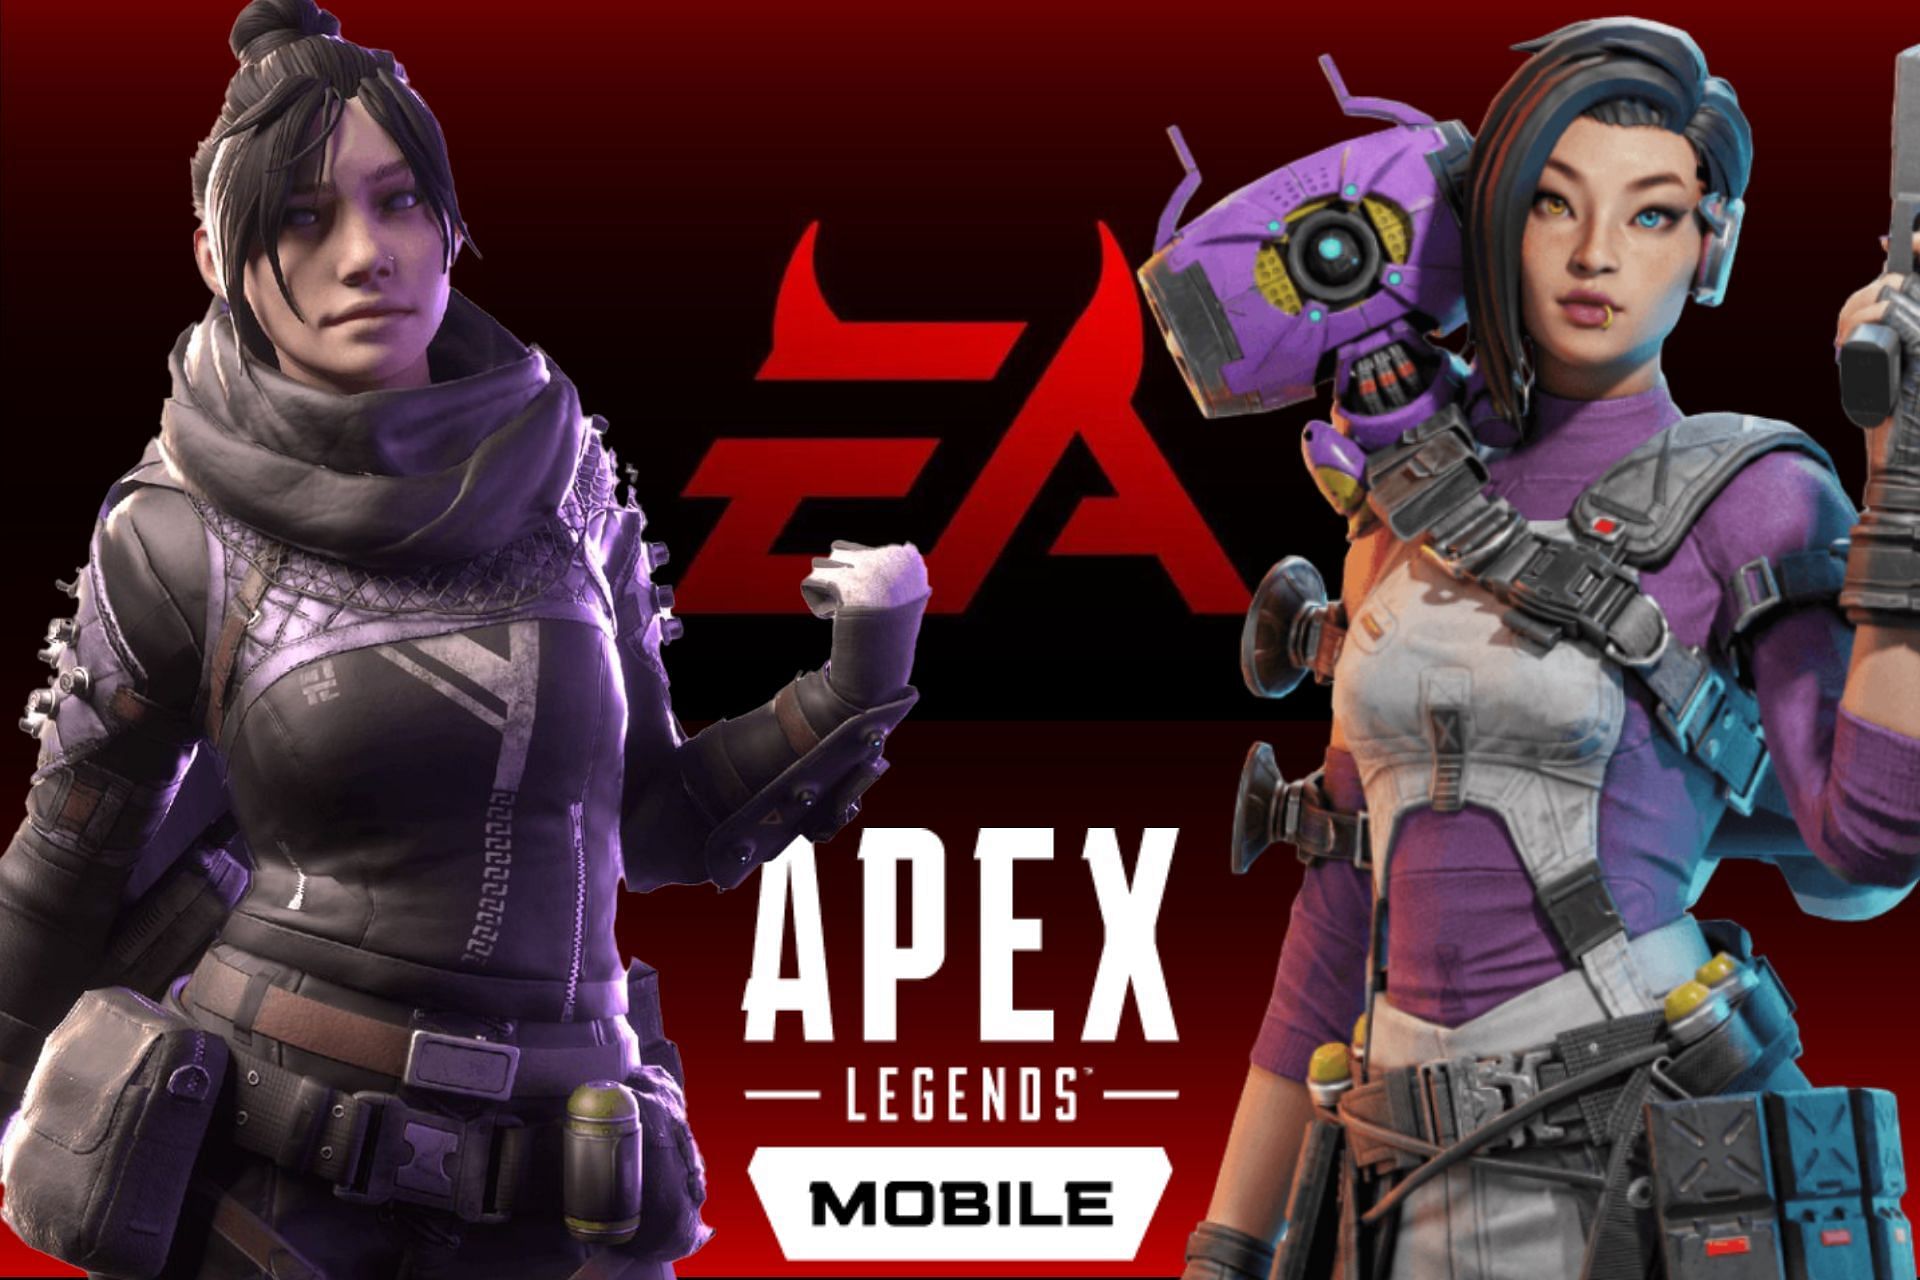 Lançamentos: Apex Legends Mobile é destaque da semana